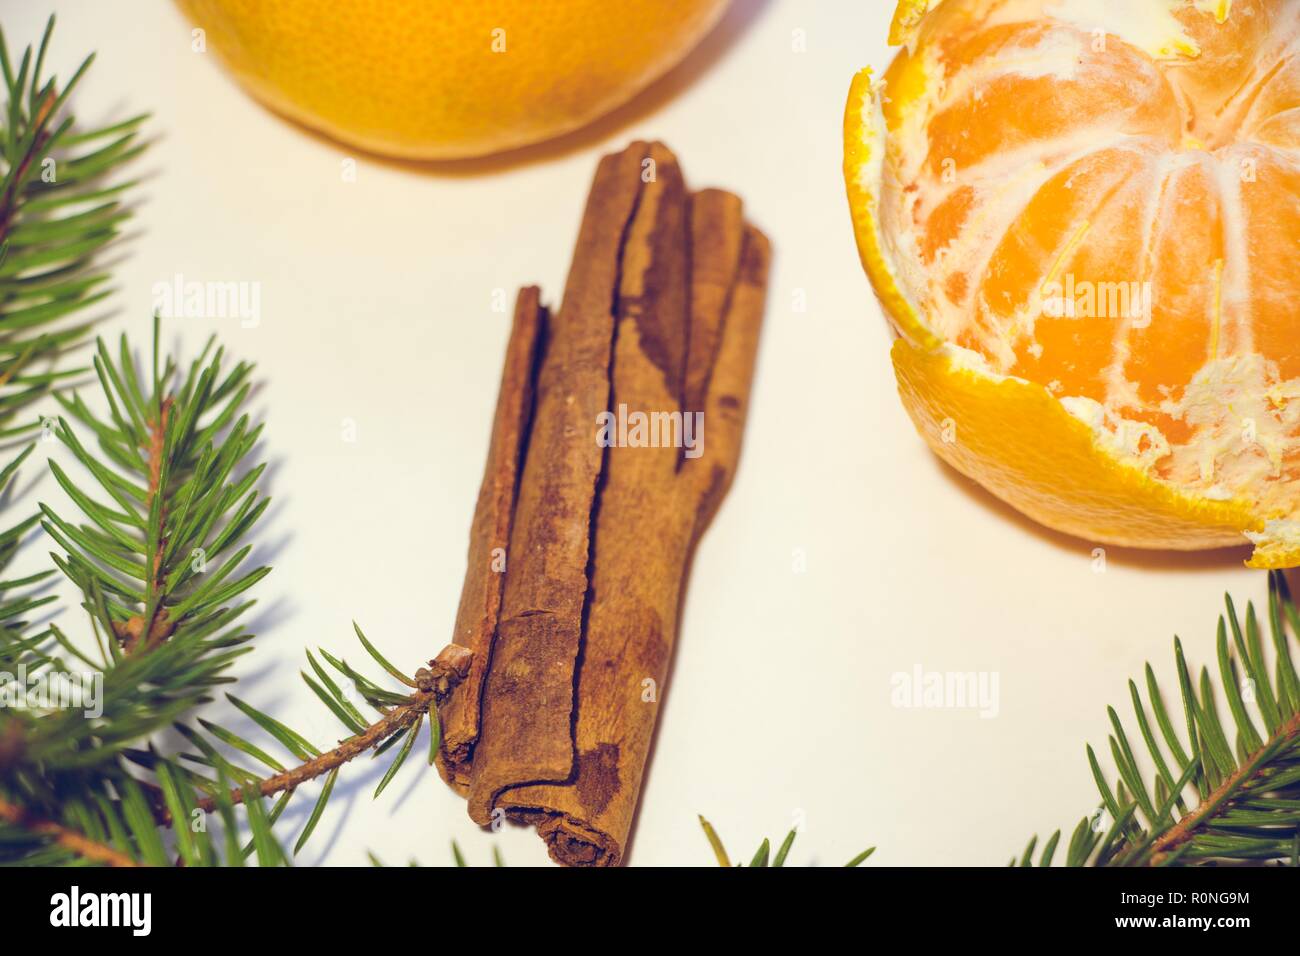 Deux mandarines, dont une est pelée, reposent sur un fond blanc. Autour de la tangerine sont branches et quelques bâtons de cannelle parfumé. Banque D'Images